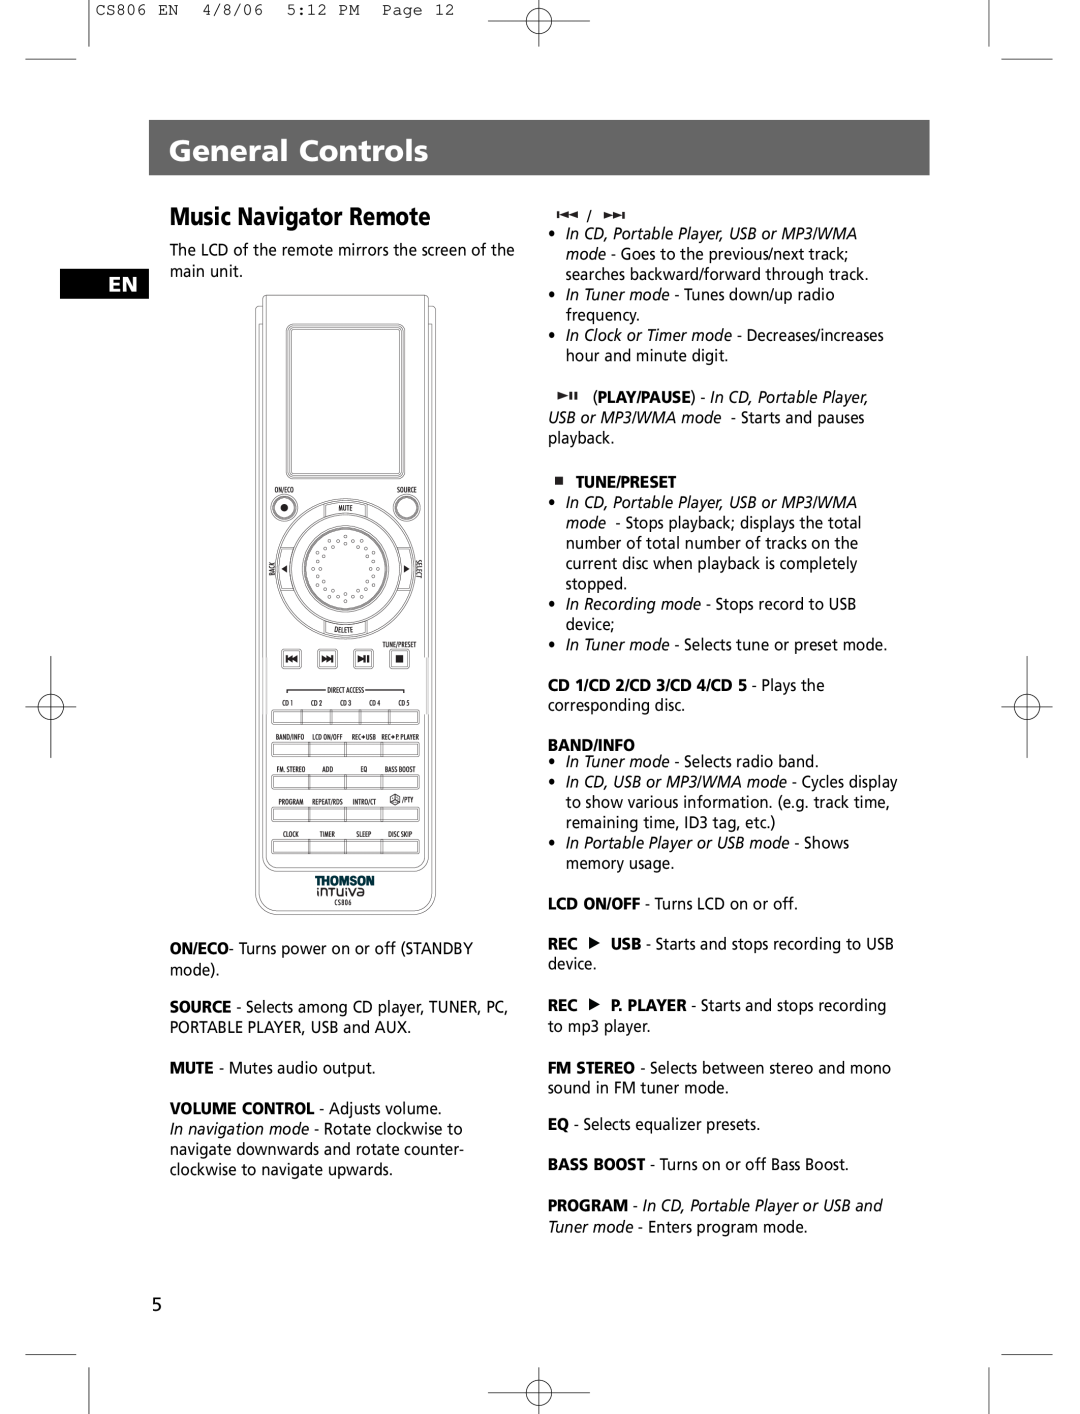 Technicolor - Thomson CS806 user manual Music Navigator Remote, General Controls, Tune/Preset, Band/Info 